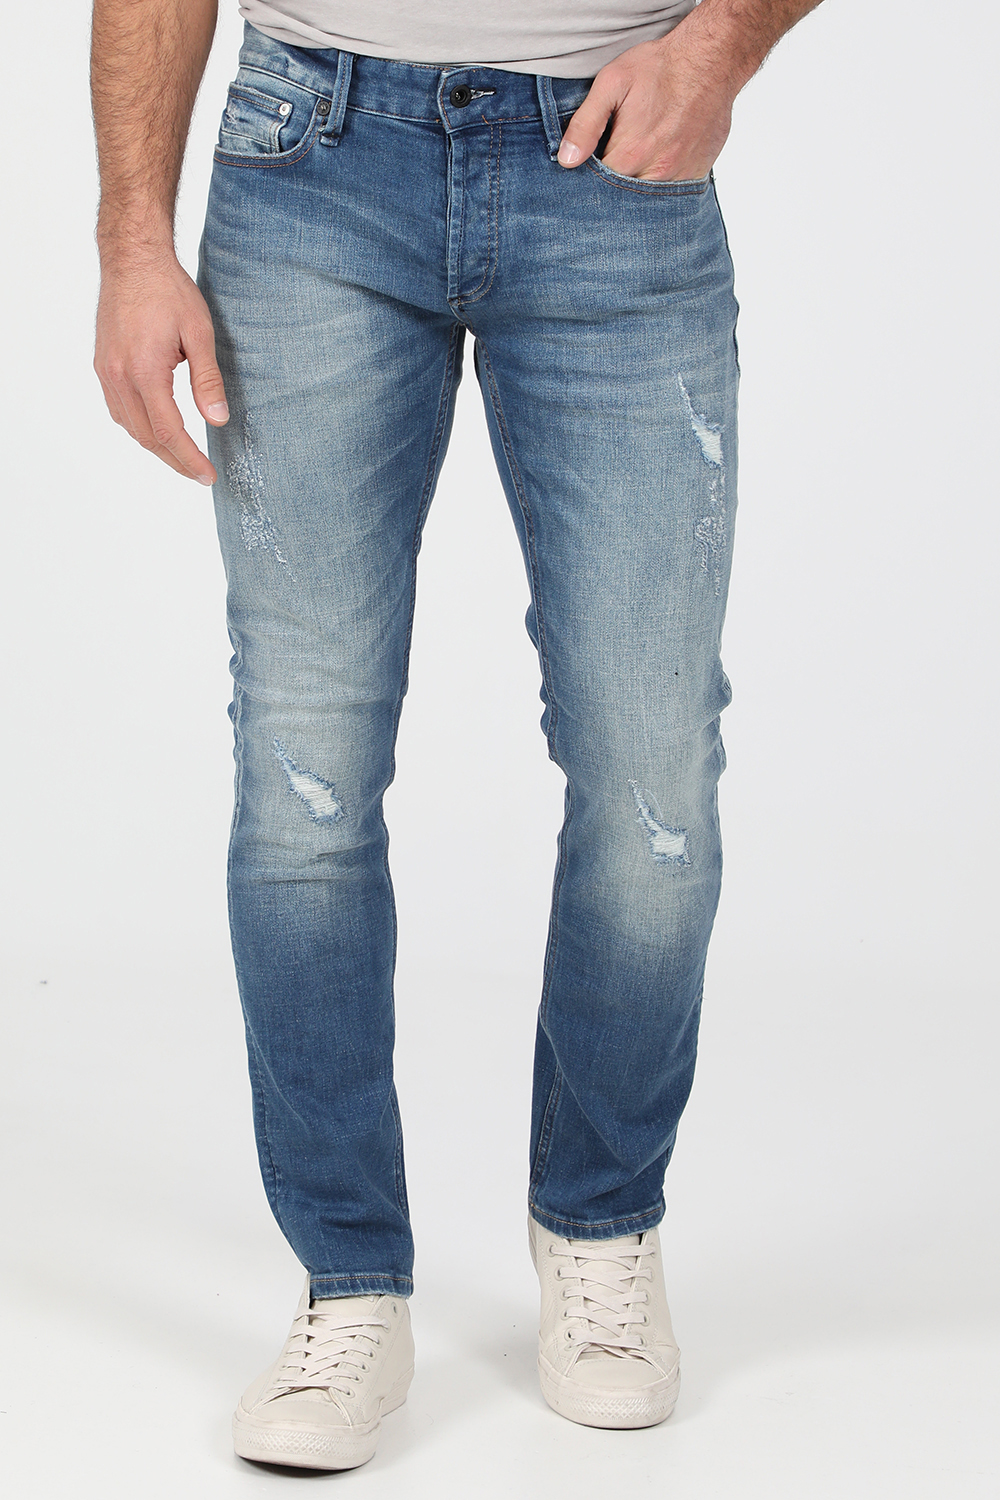 Ανδρικά/Ρούχα/Τζίν/Loose DENHAM - Ανδρικό jean παντελόνι DENHAM RAZOR WLBALTI μπλε